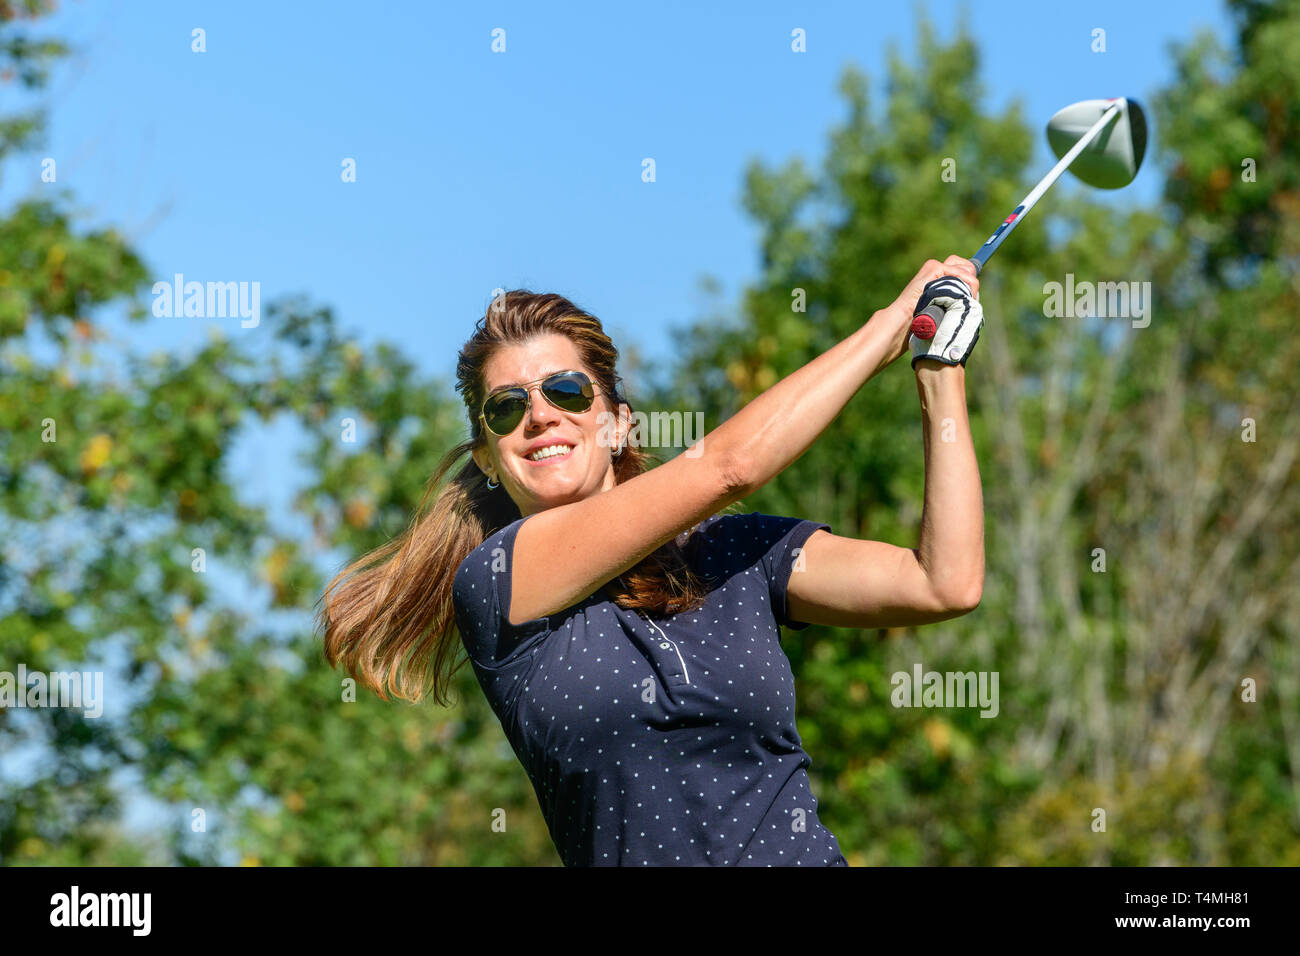 De bonne humeur woman playing golf Banque D'Images